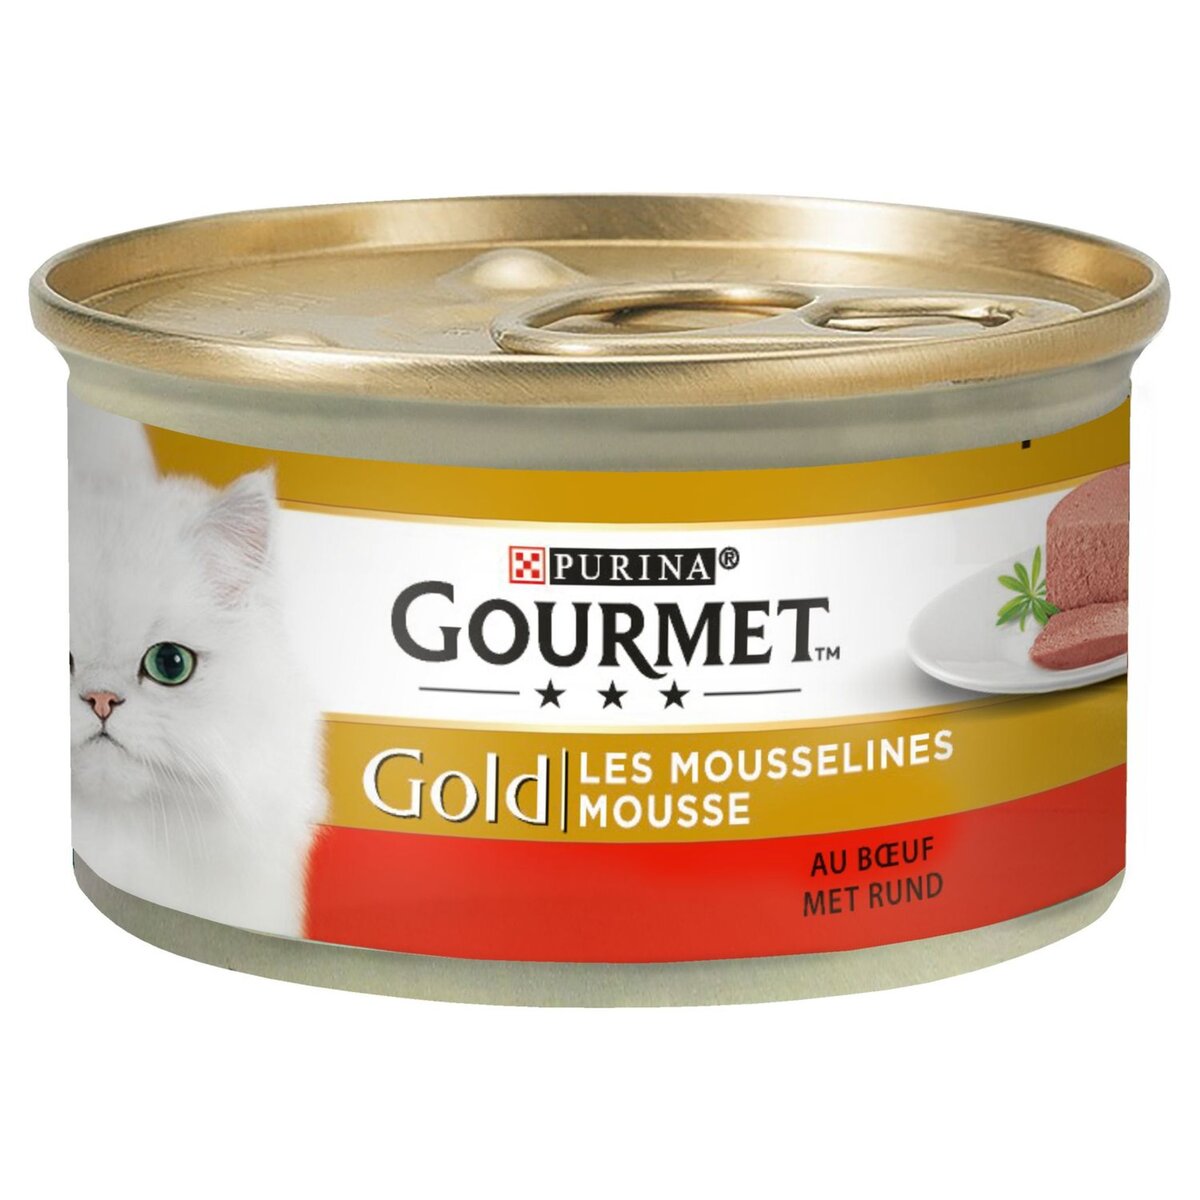 GOURMET Gourmet Gold les mousselines boîte pâtée en mousse au boeuf pour chat 85g 85g